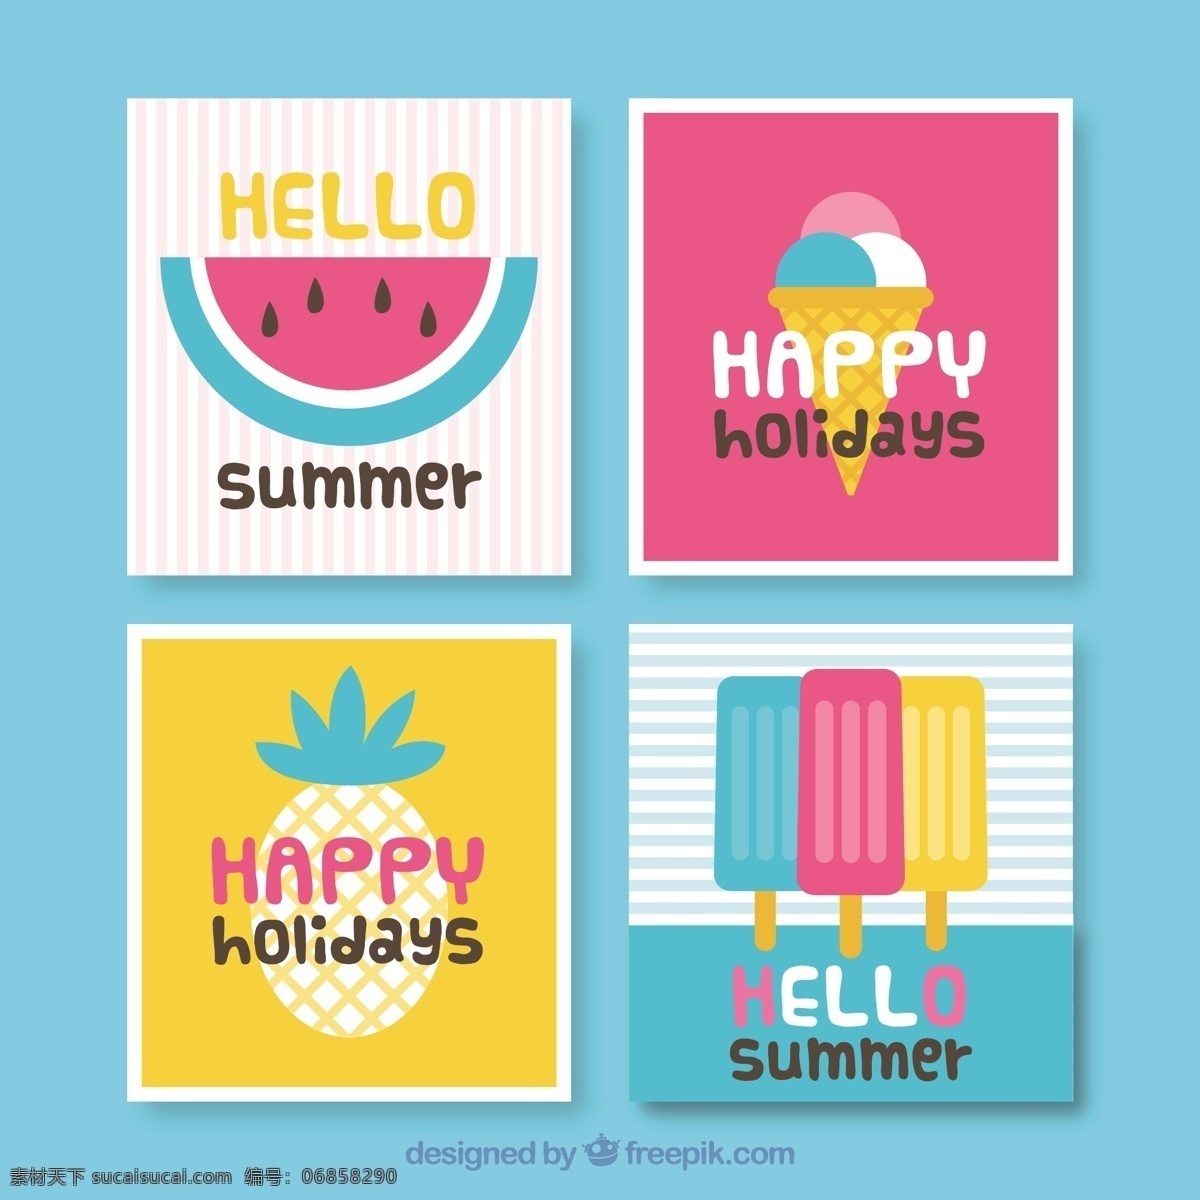 夏季 装饰 卡片 收藏 采购产品卡片 夏天 模板 水果 冰淇淋 颜色 假日 平坦 冰 平面设计 菠萝 度假 印刷 奶油 季节 节日卡片